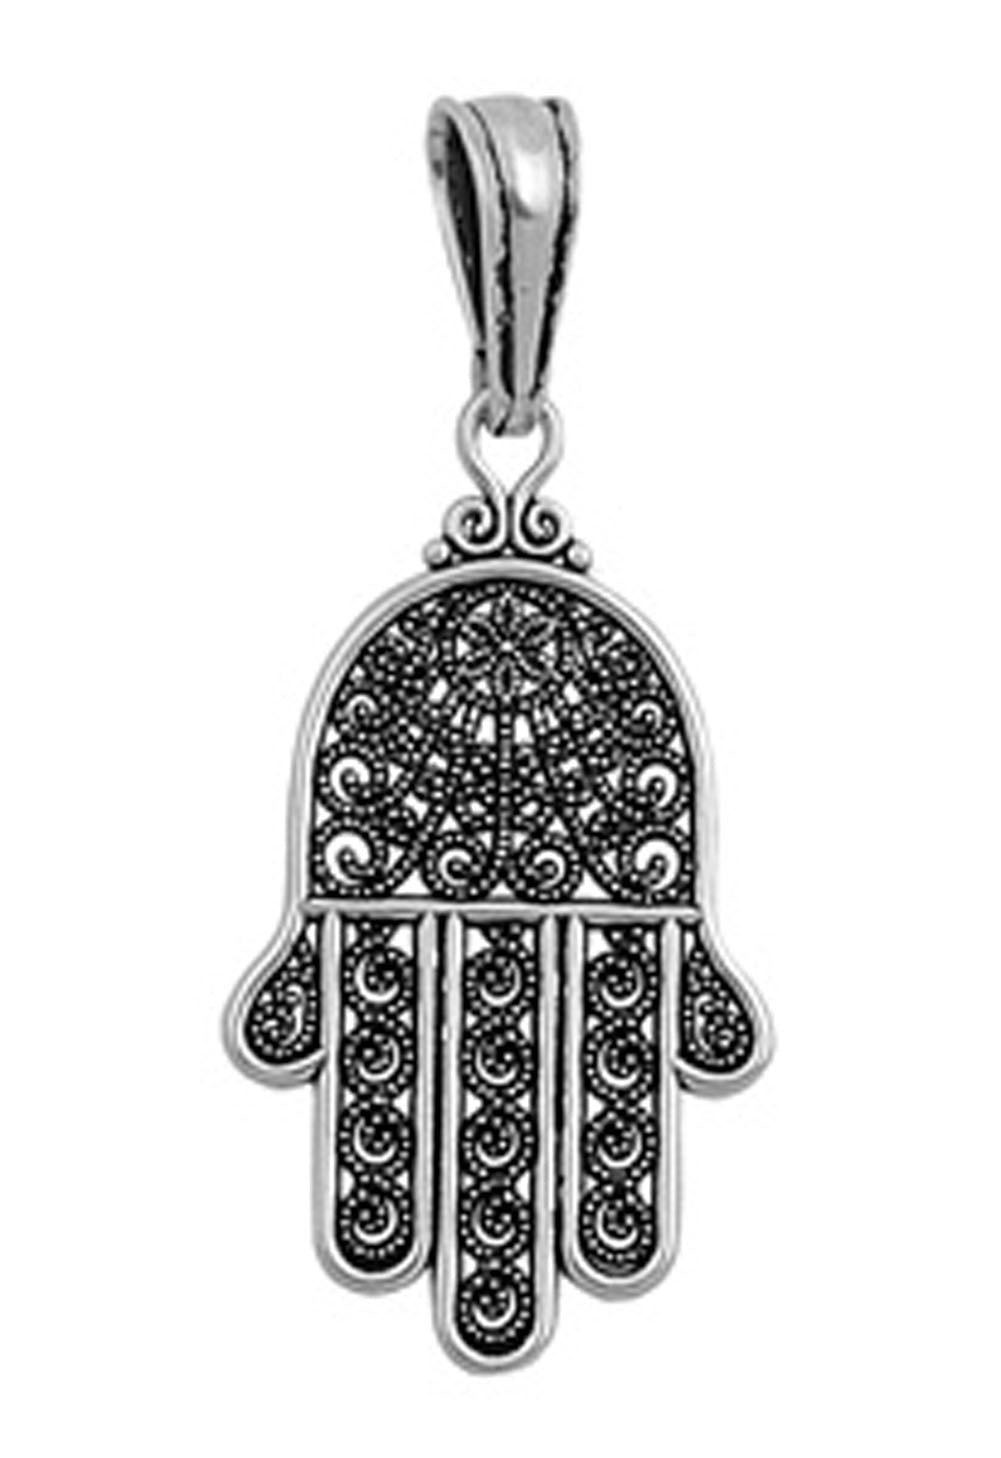 Ornate Hand of God Pendant .925 Sterling Silver Detailed Hamsa Finger Charm